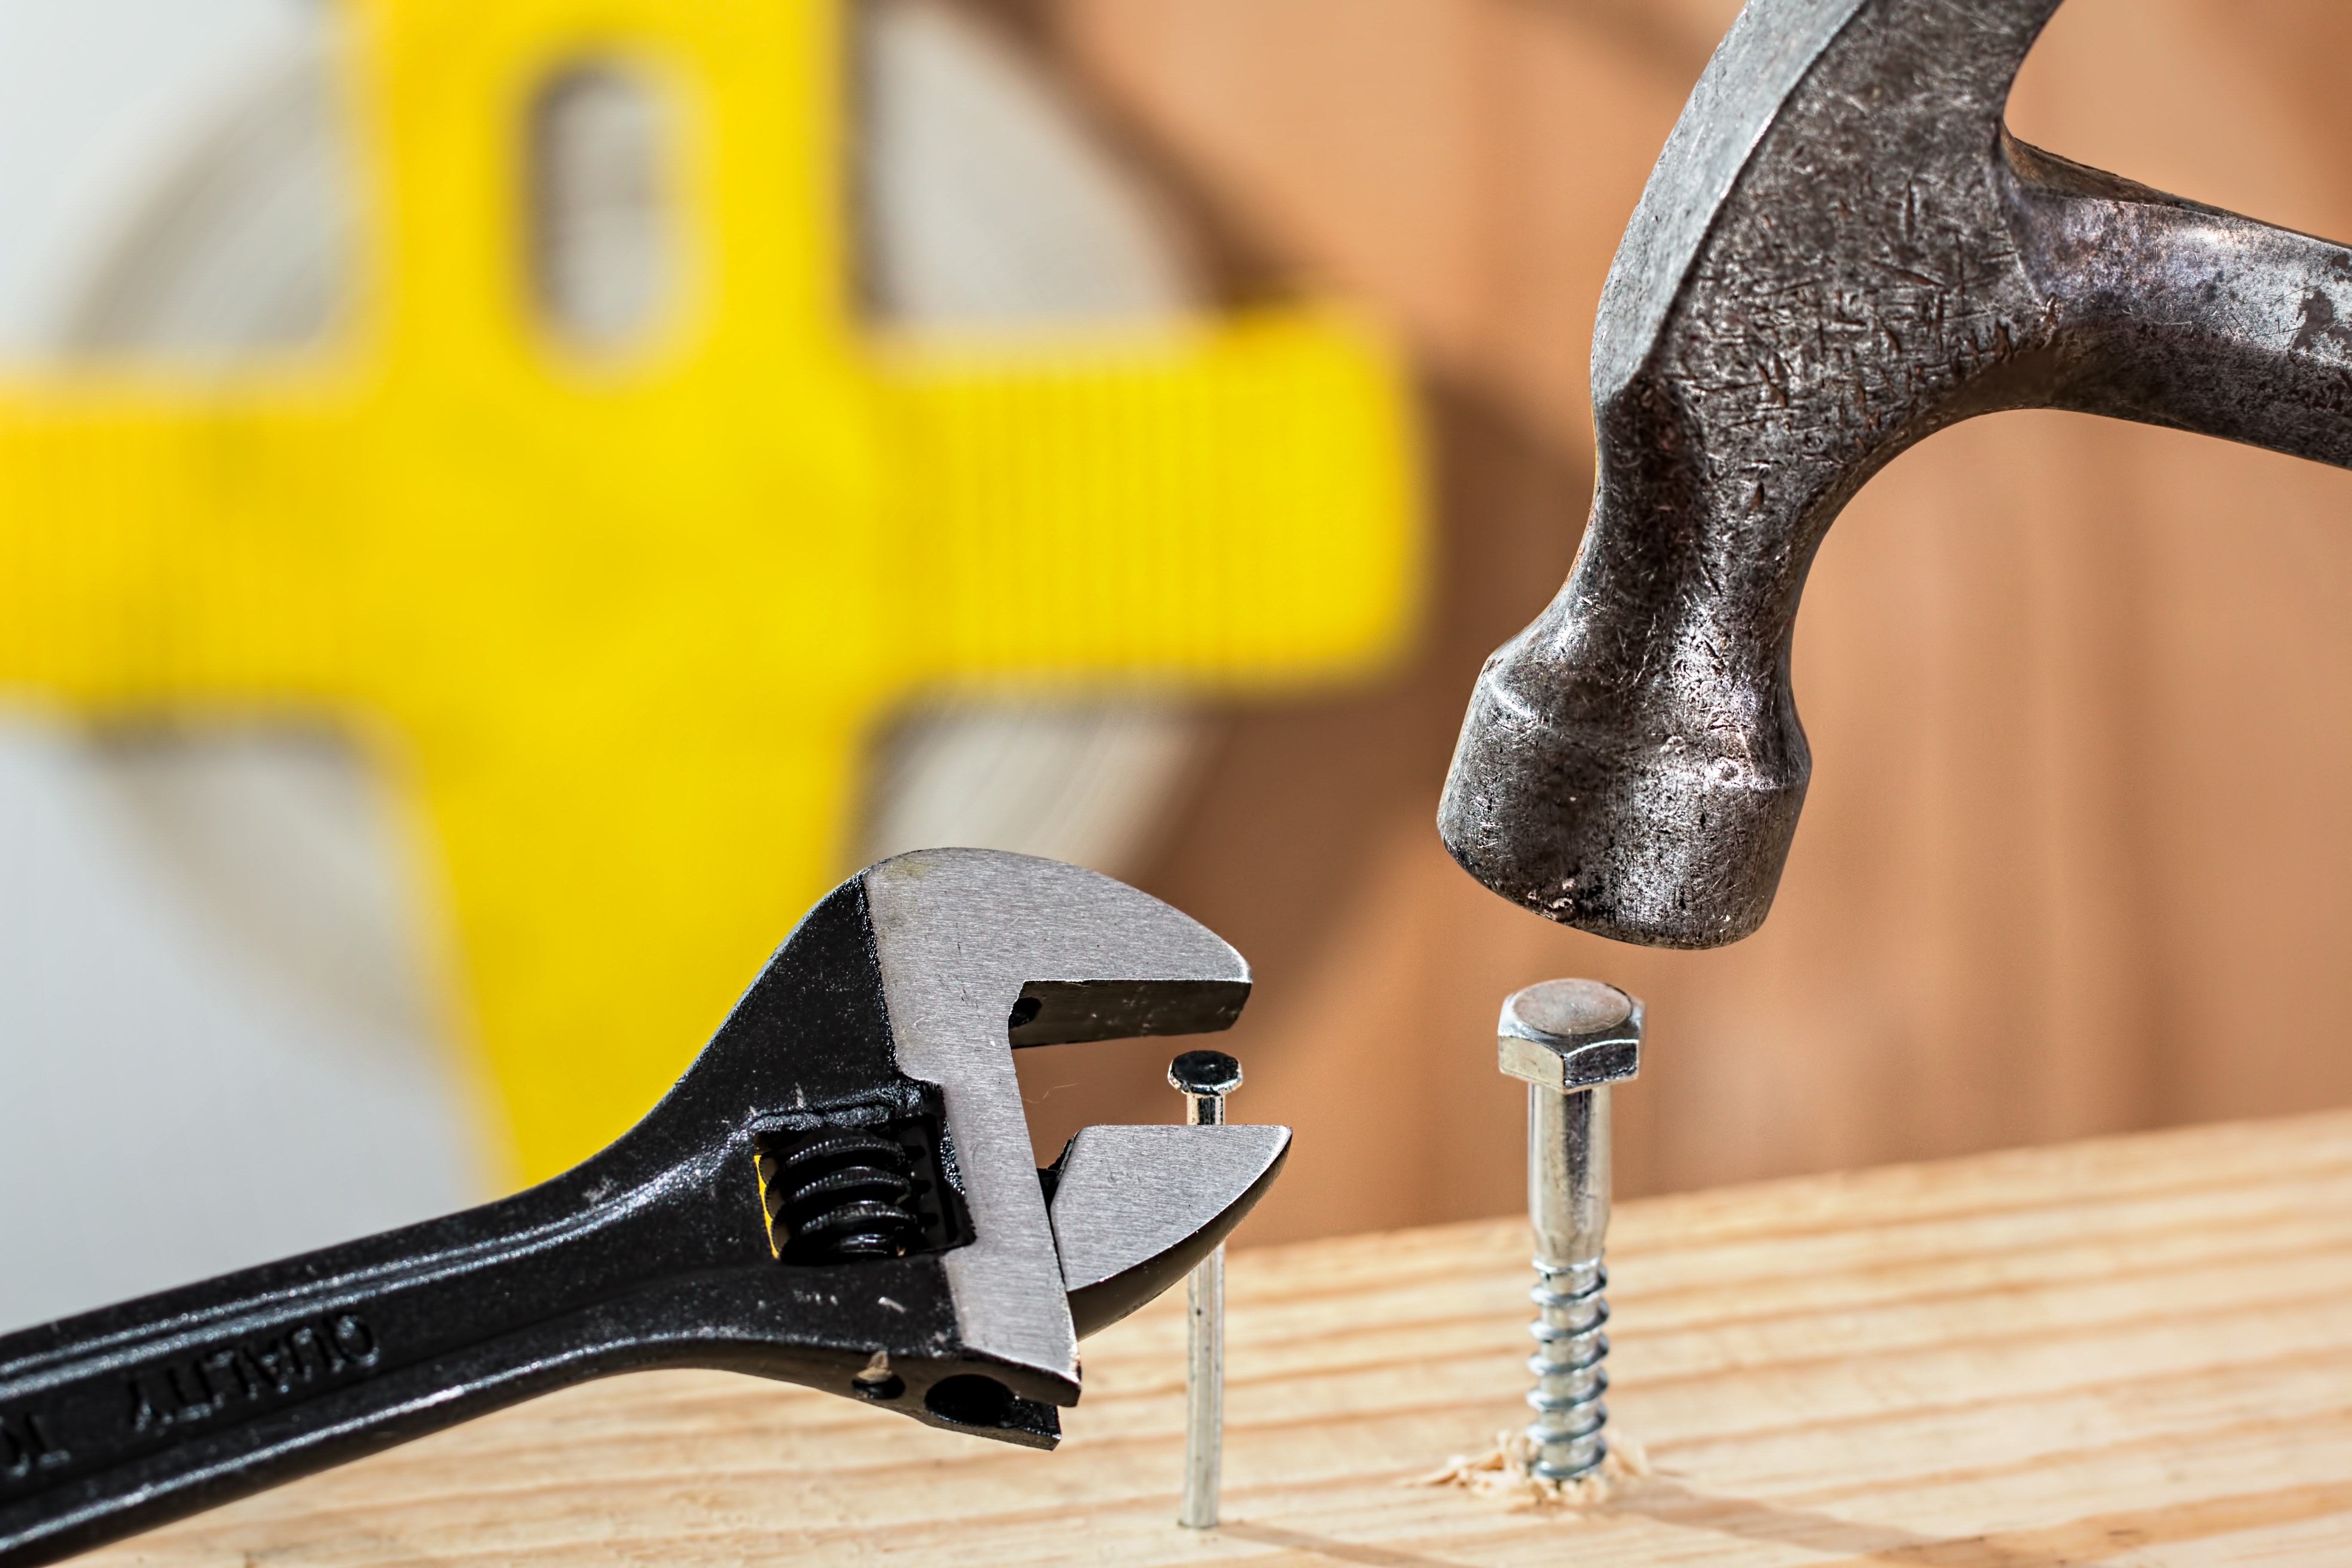 Hero Image: Hammer and Wrench, Foto von Pixabay von Pexels